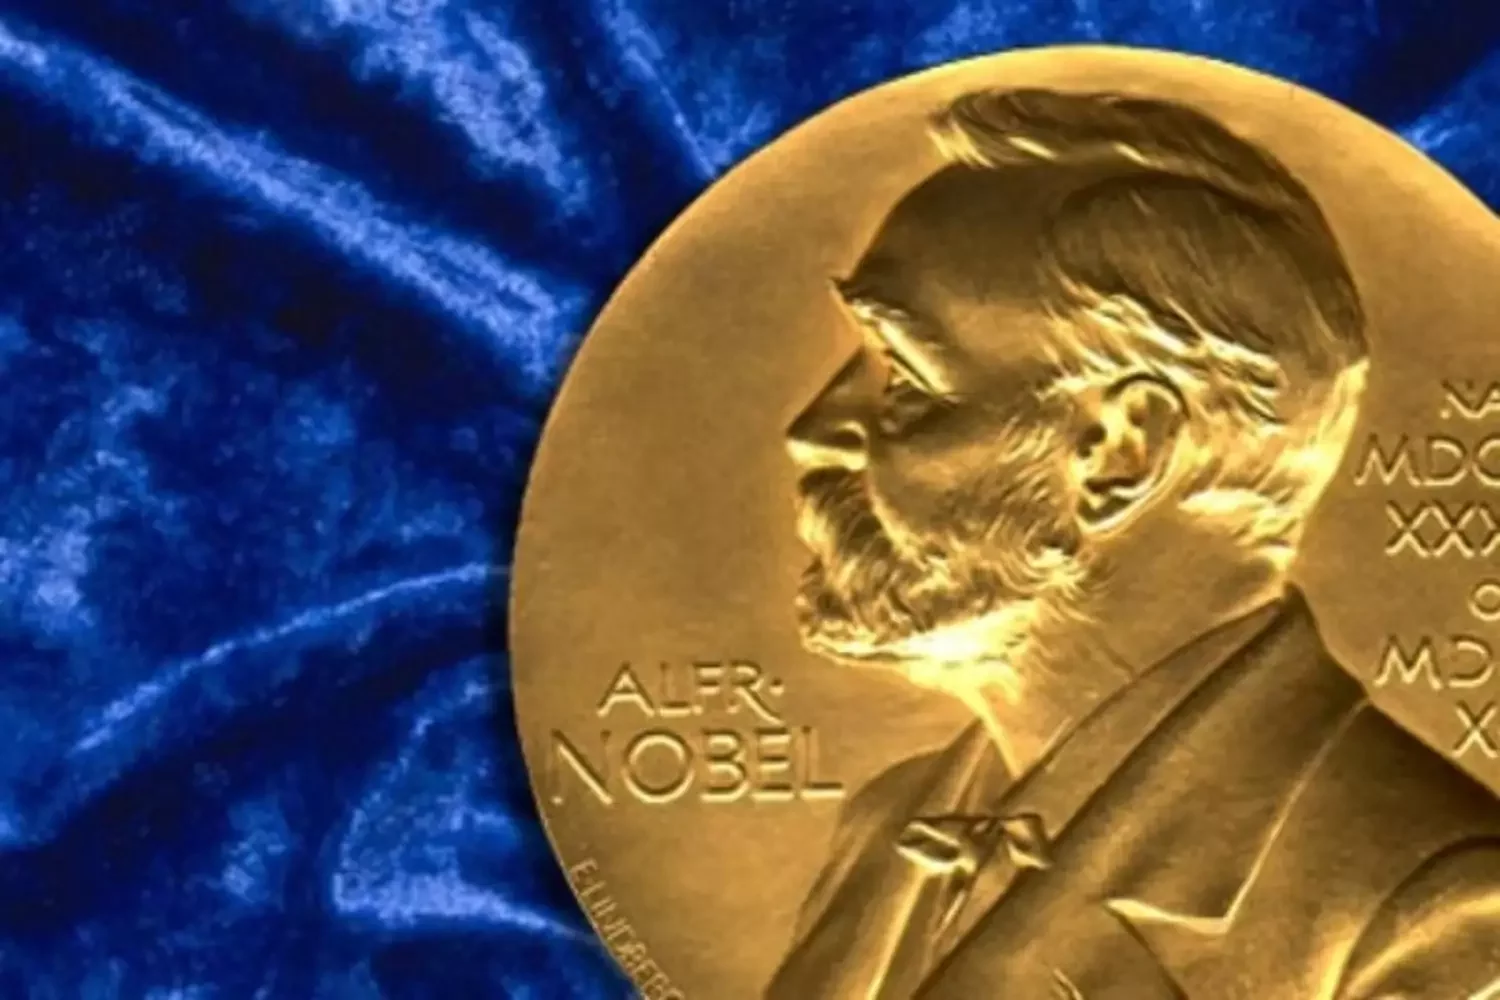 Нобелевские премии начало 20 века